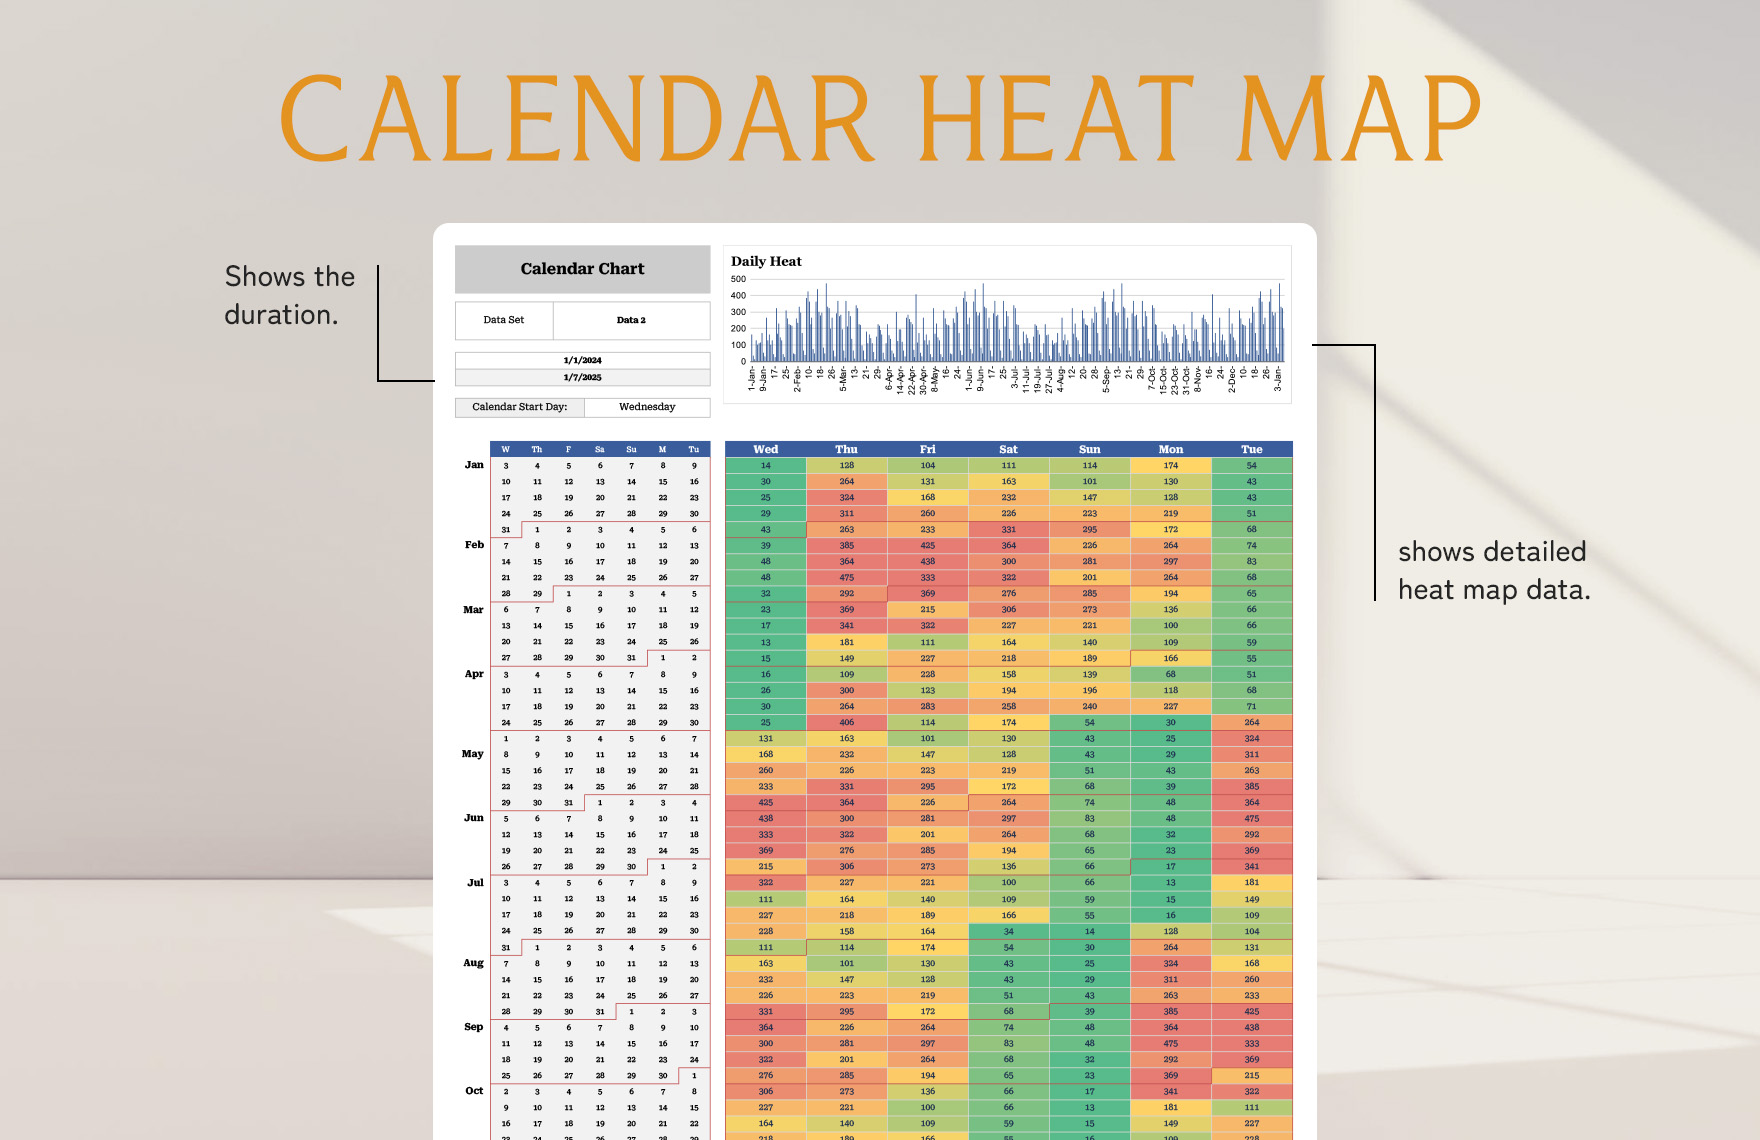 Calendar Heat Map Template